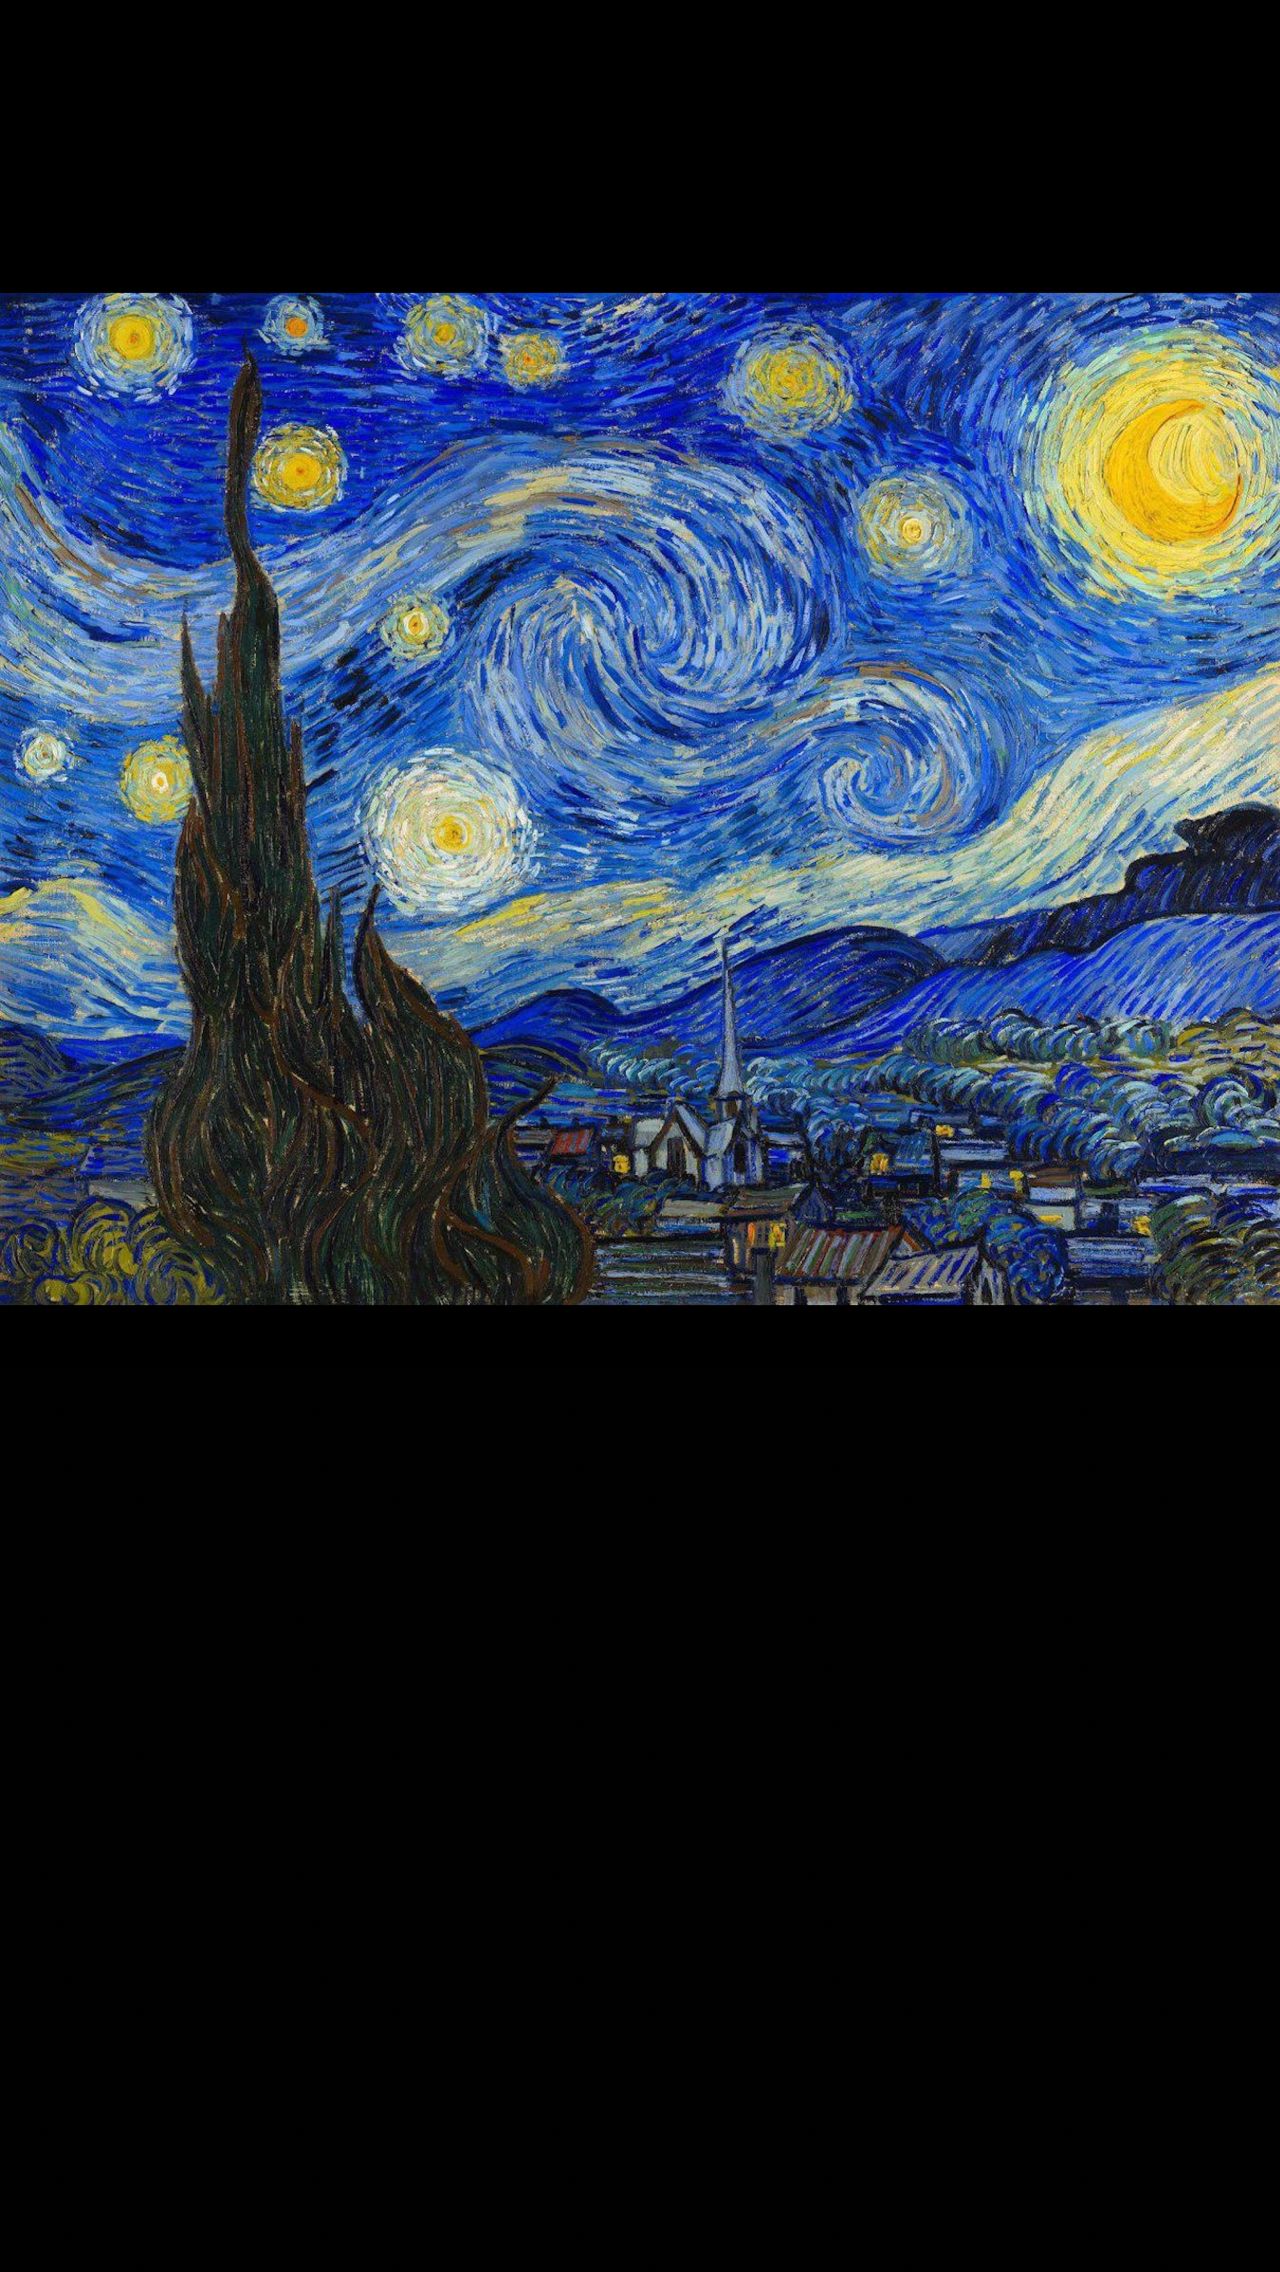 «Звёздная ночь» – это одна из самых известных картин Винсента Ван Гога. Написана в июне 1889 года